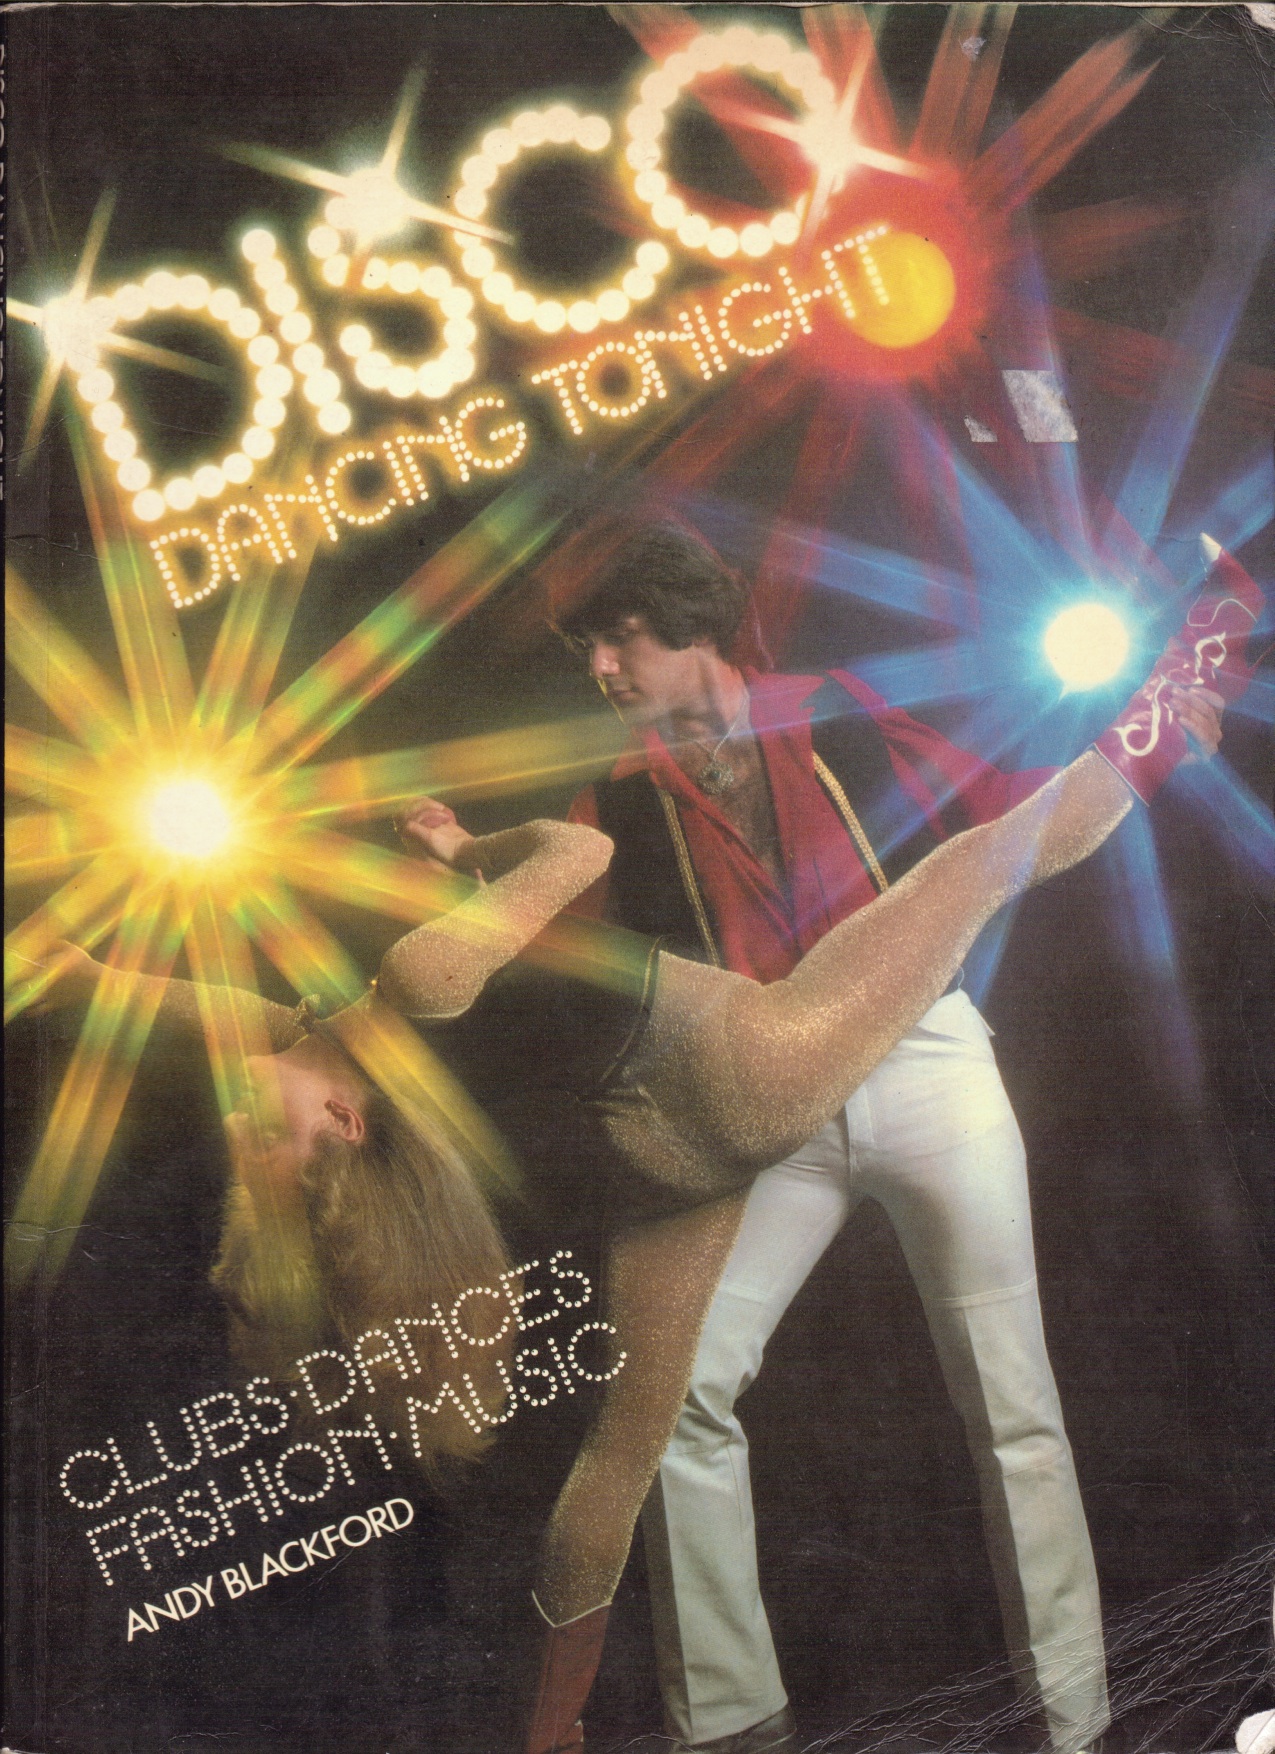 Como para inspirarse en Año Nuevo: Imágenes del libro “Disco dancing tonight”